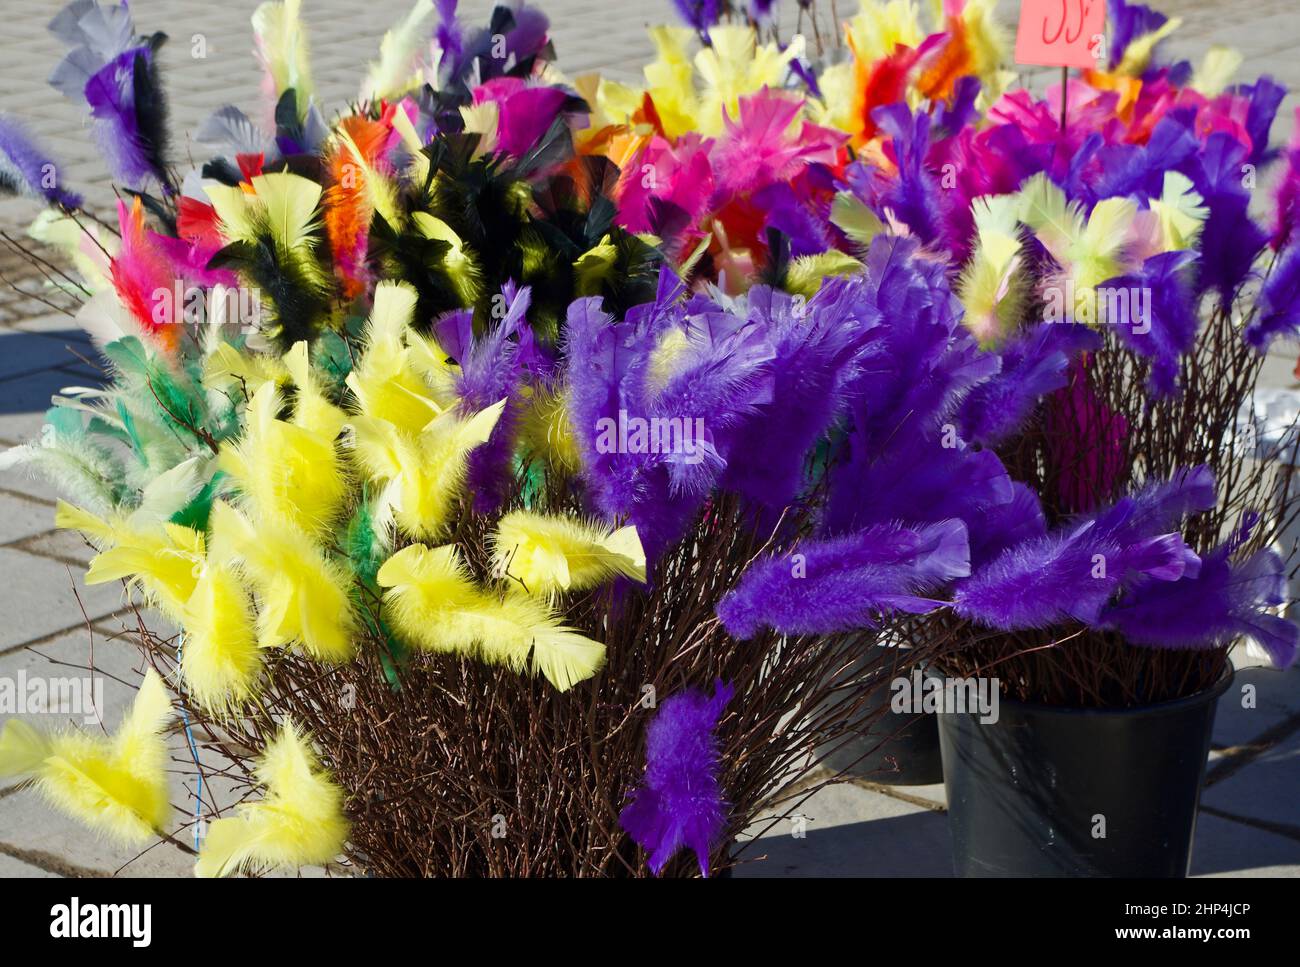 Brindilles de bouleau avec des plumes dans de nombreuses couleurs différentes comme décoration pendant le Carême et Pâques. Banque D'Images